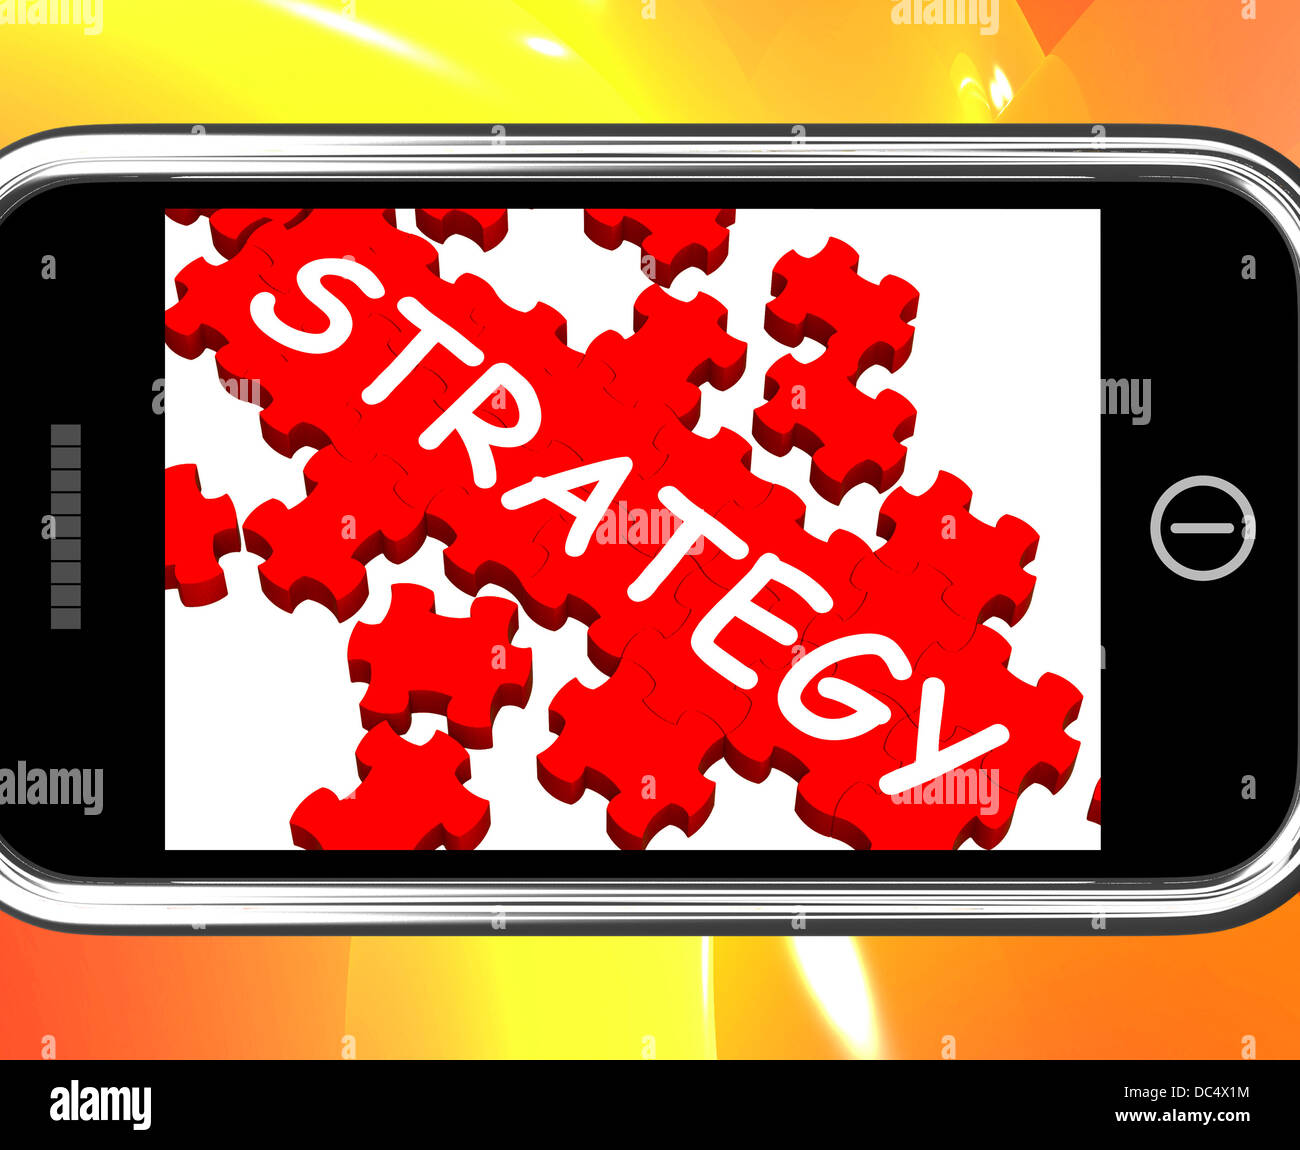 Estrategia en Smartphone mostrando Visión estratégica Foto de stock